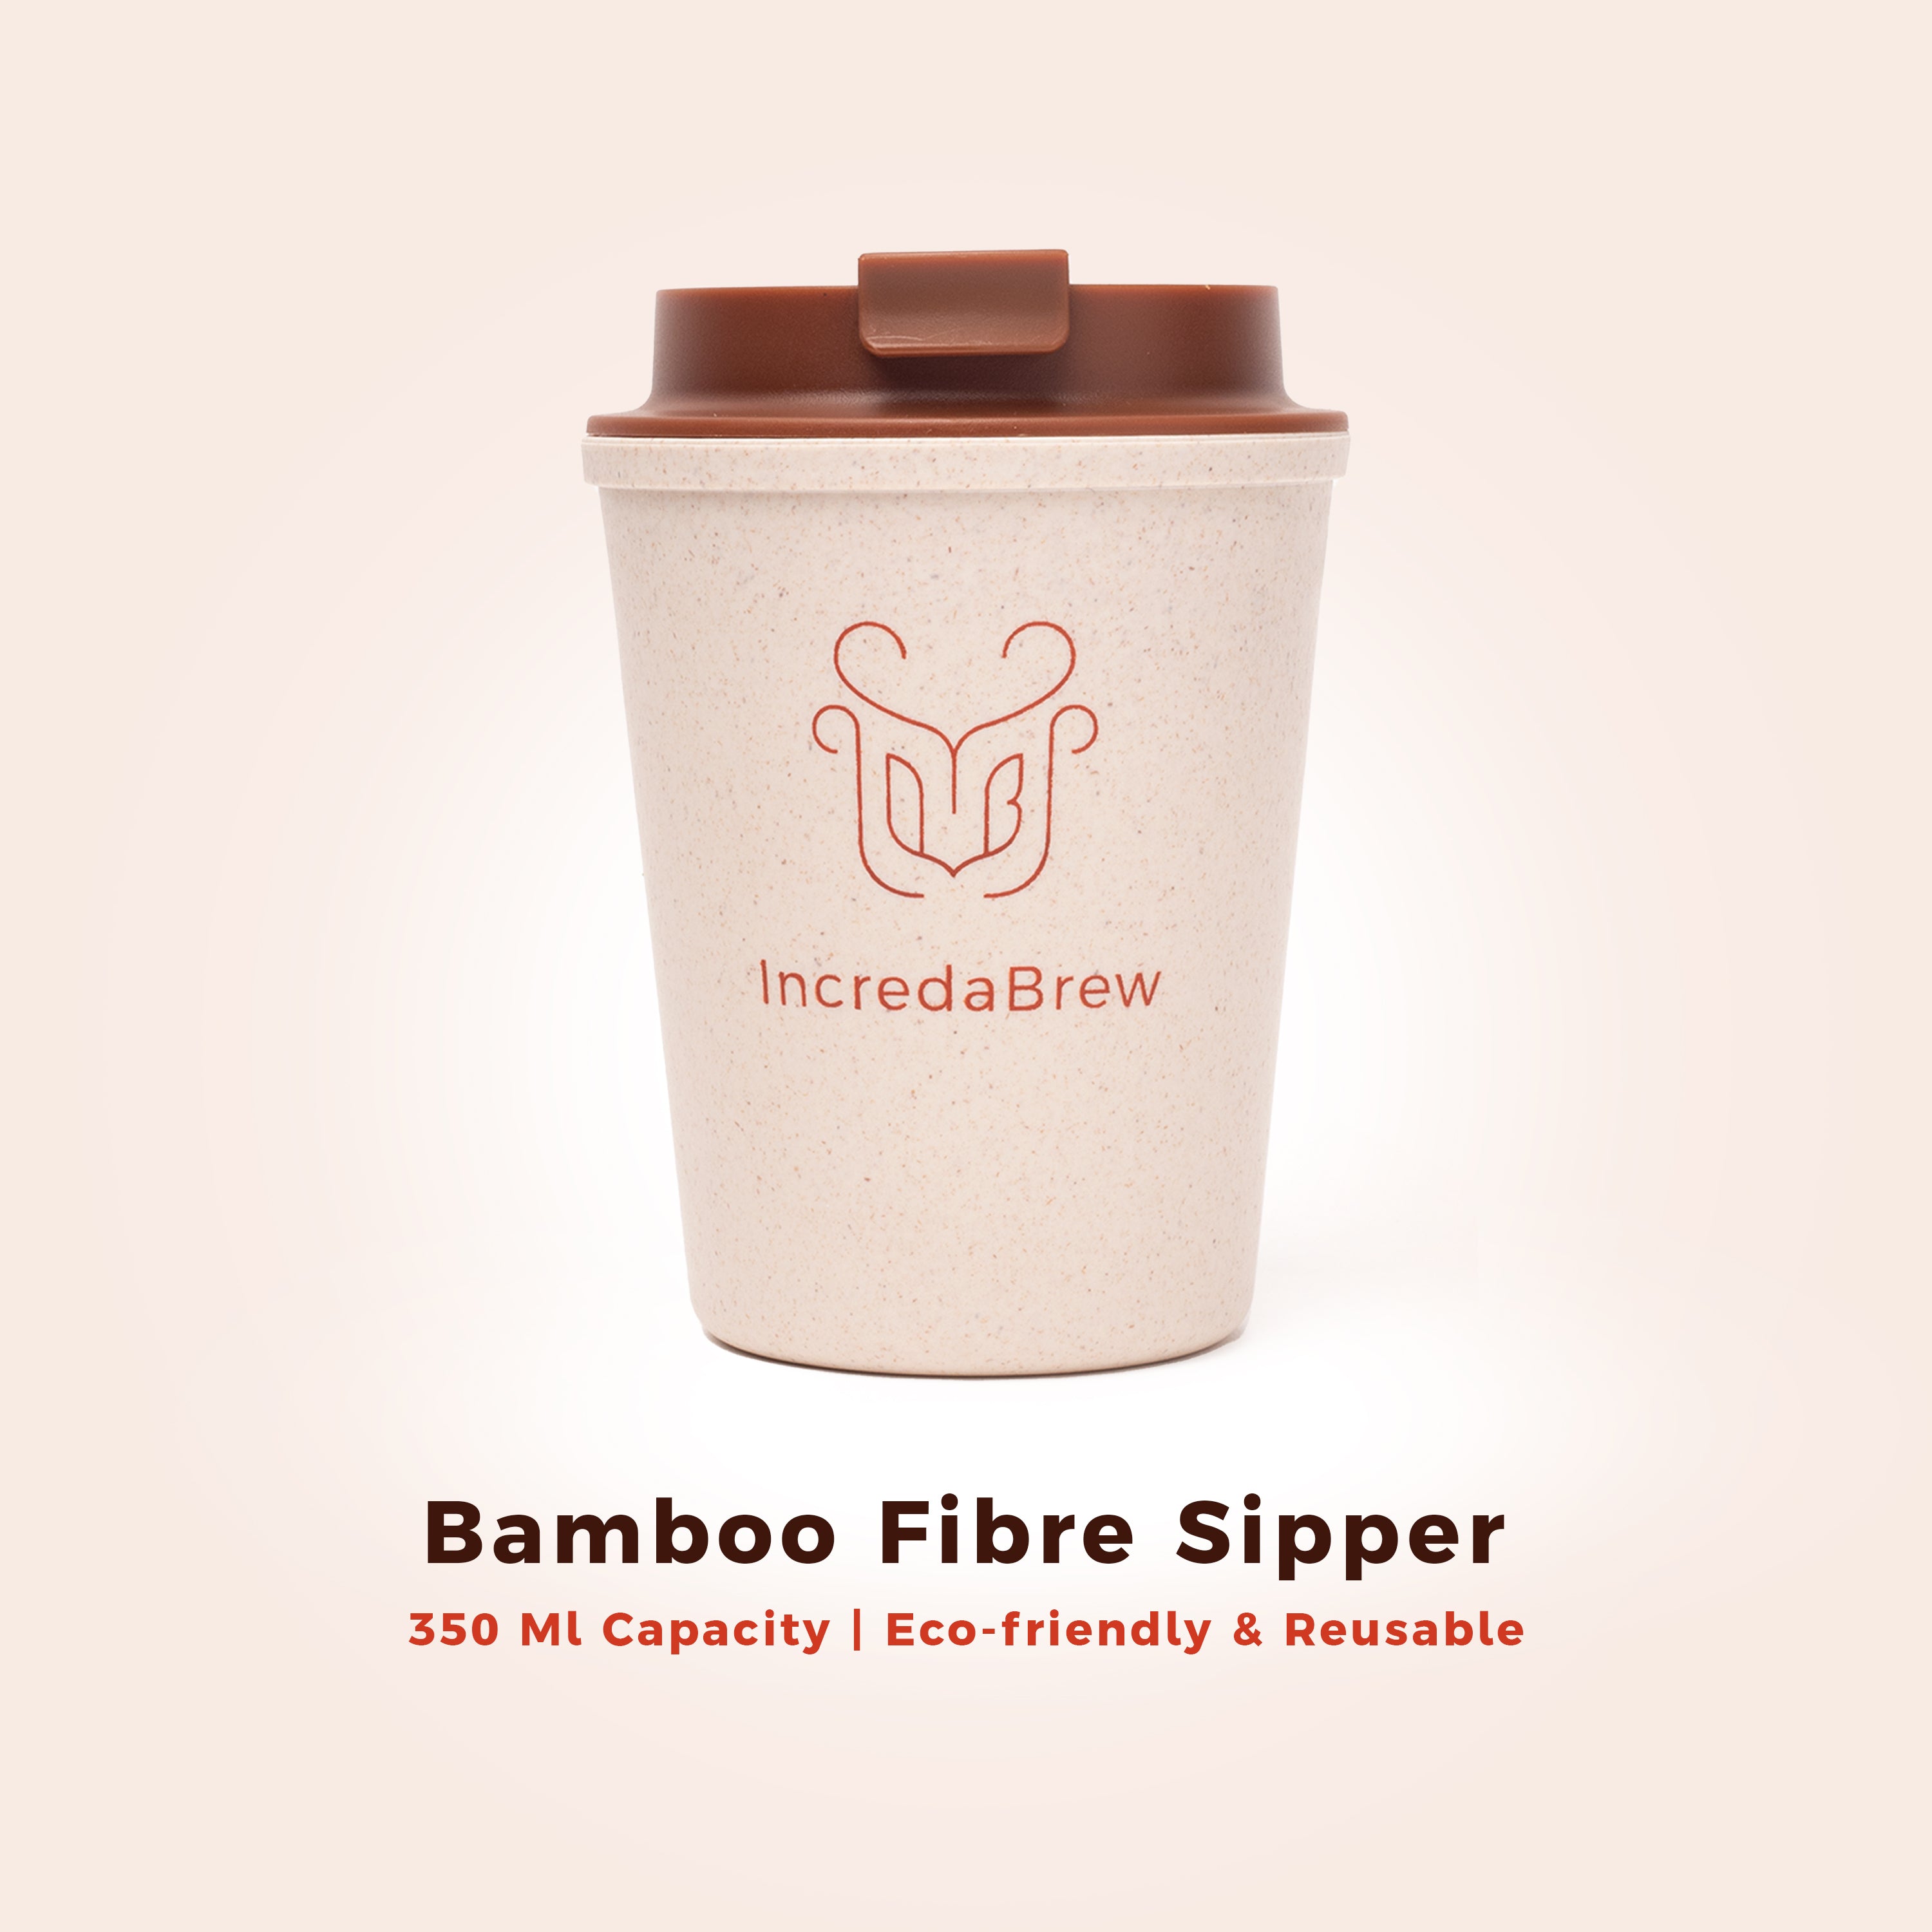 Bamboo Fibre Sipper